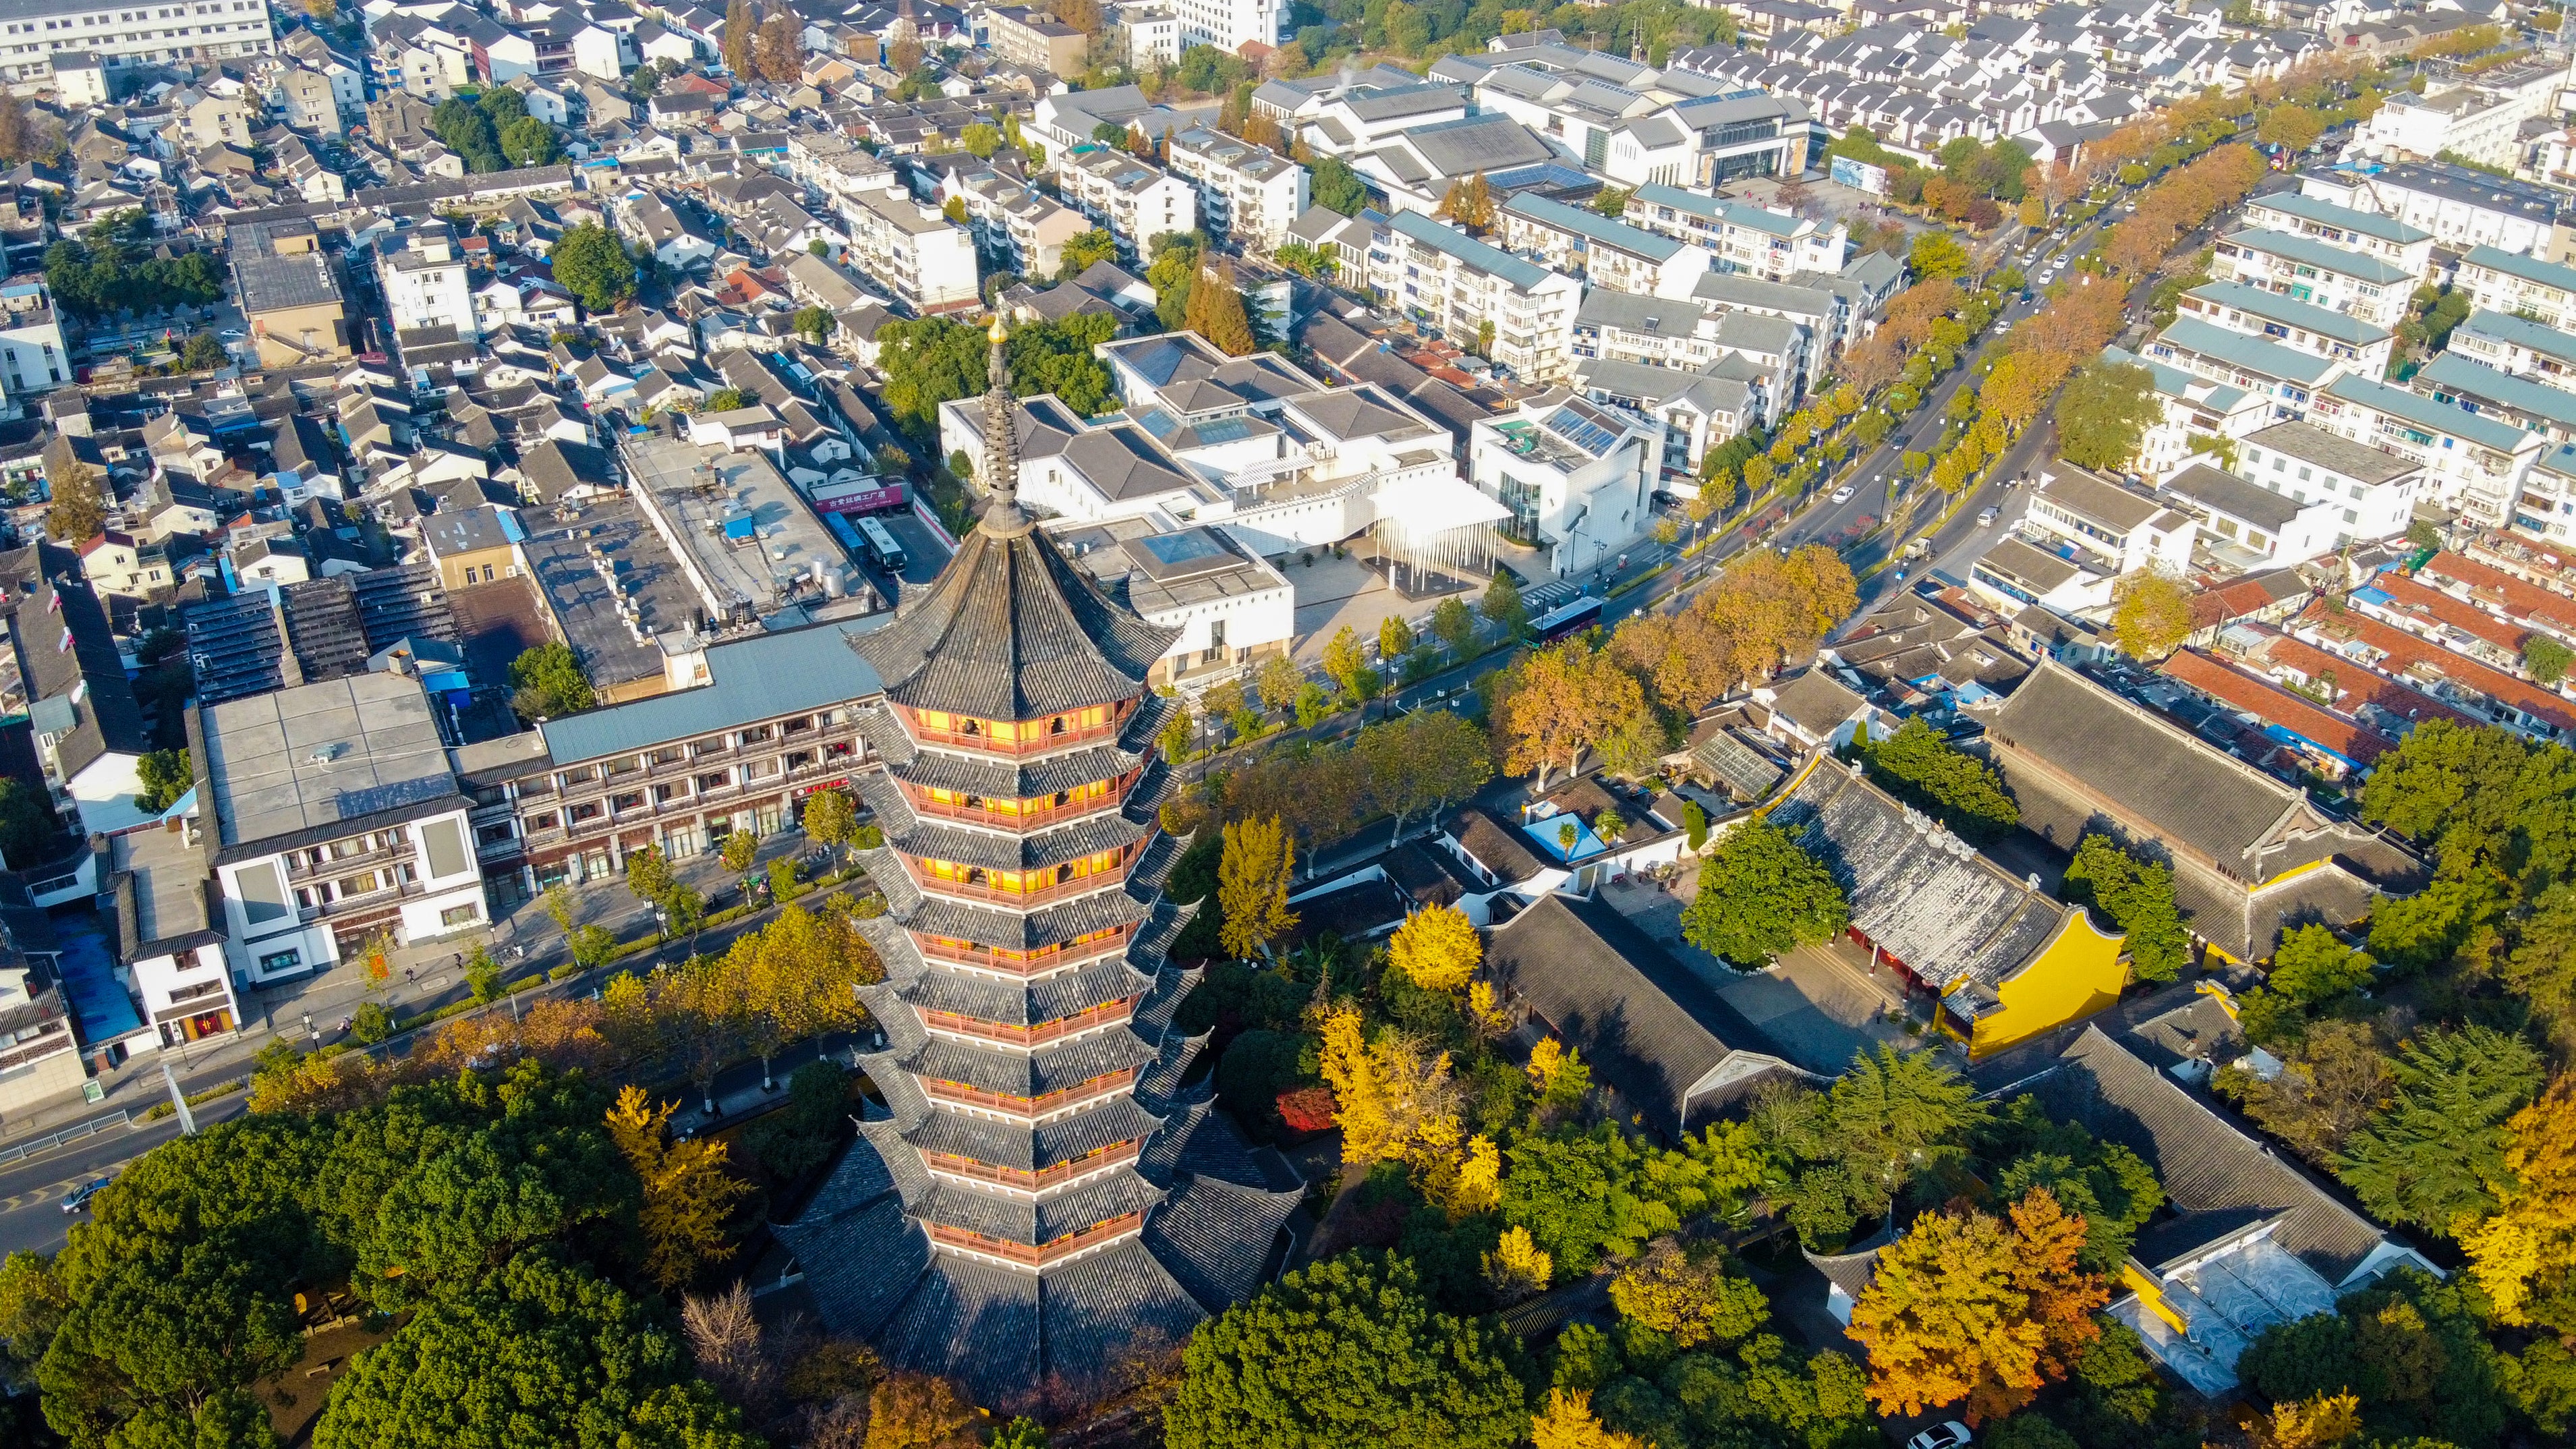 The Beisita pagoda in Suzhou, Jiangsu province